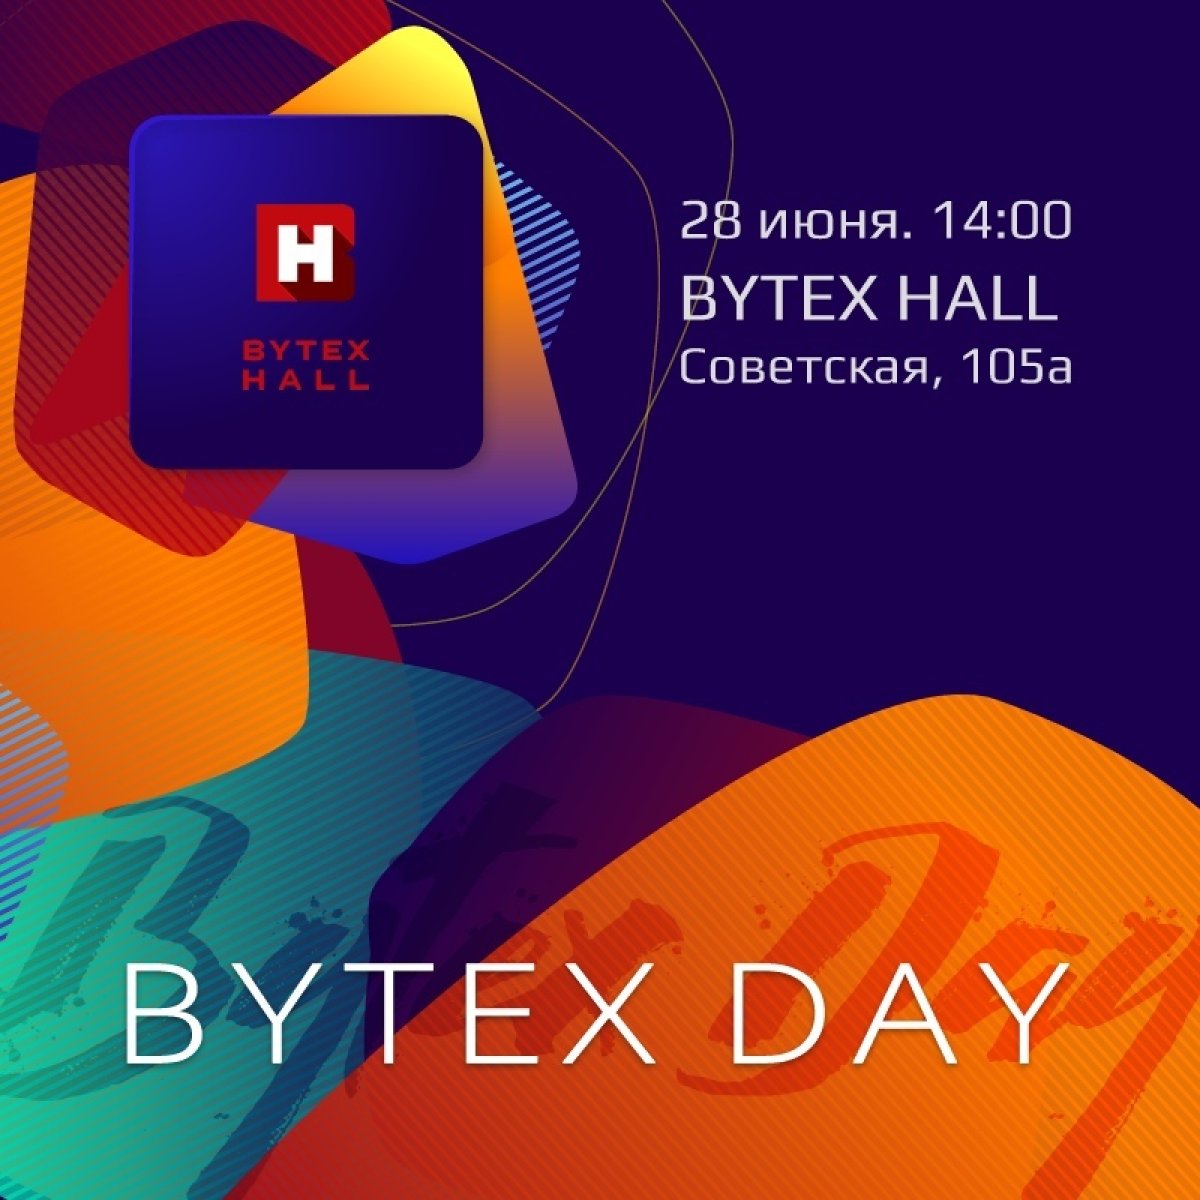 28 июня в 14:00 компания BYTEX приглашает на День IT-карьеры!